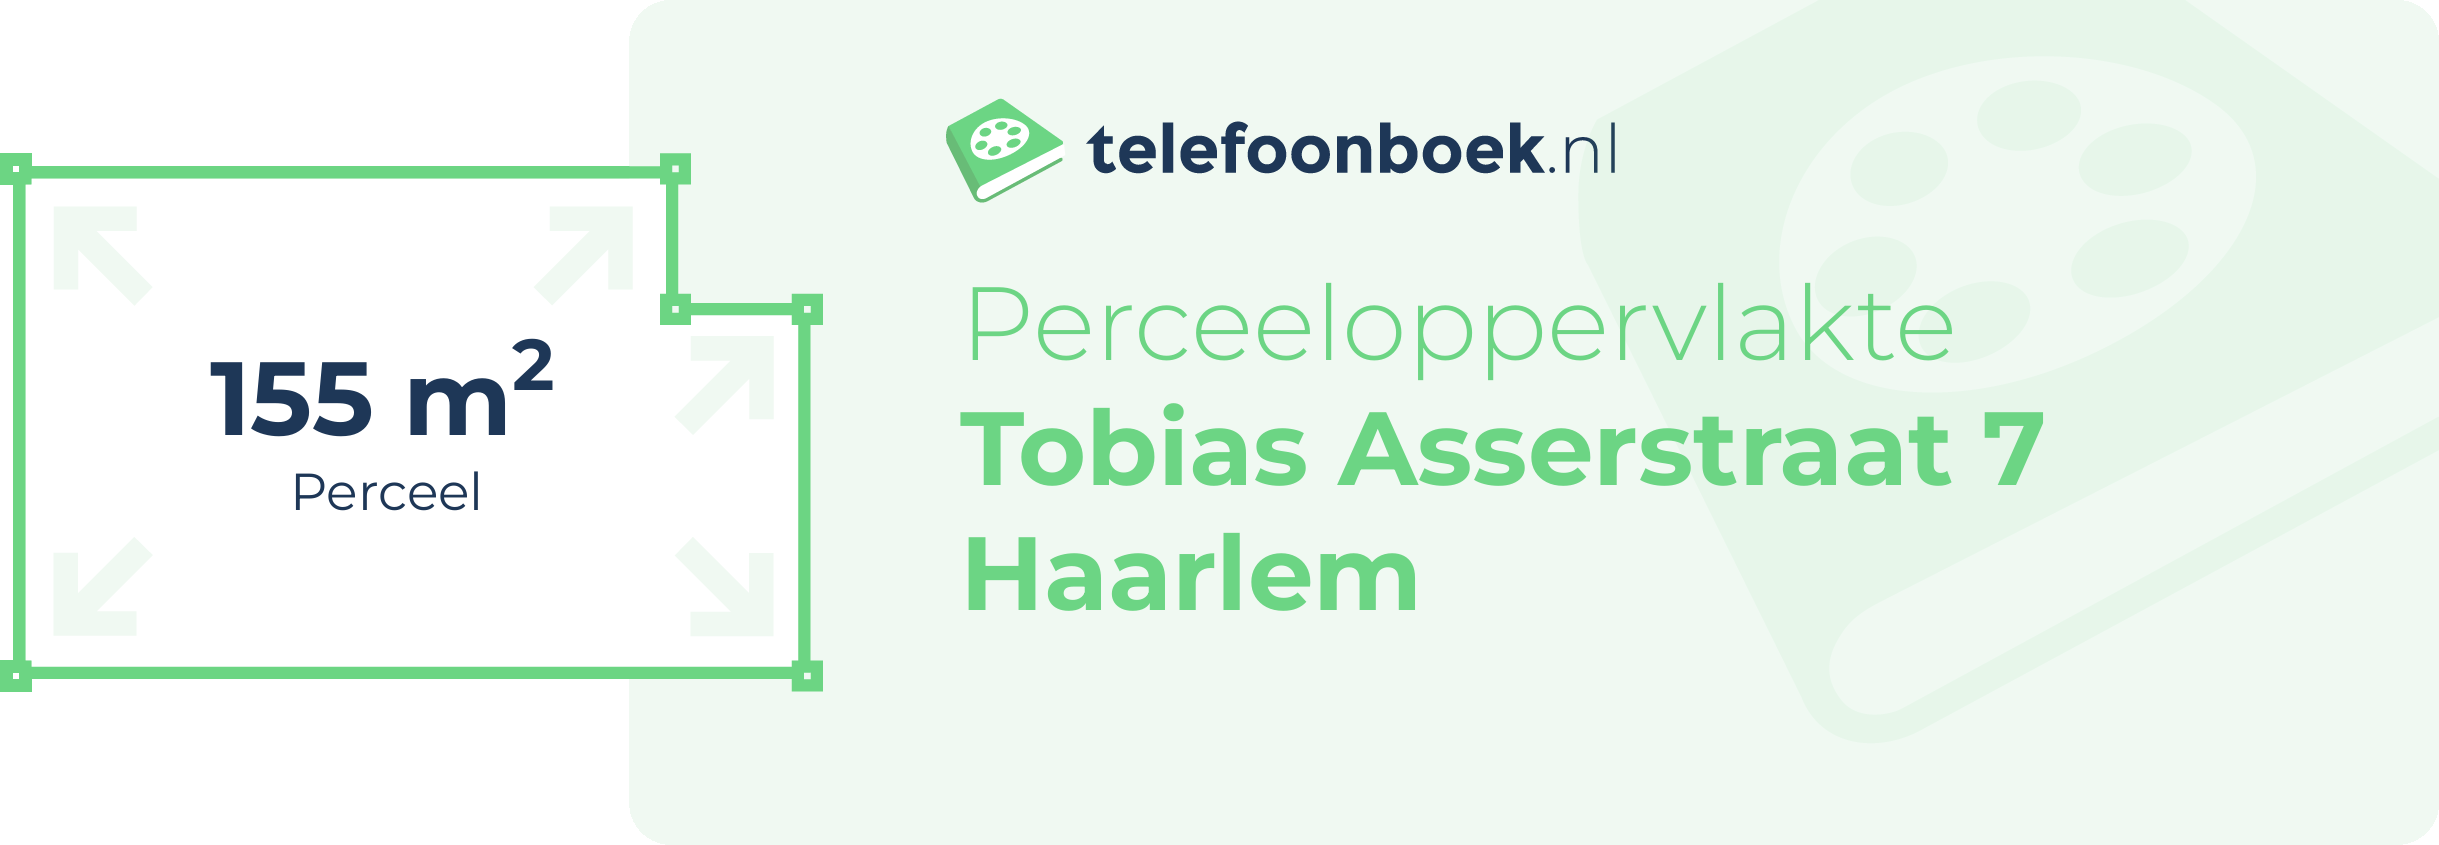 Perceeloppervlakte Tobias Asserstraat 7 Haarlem